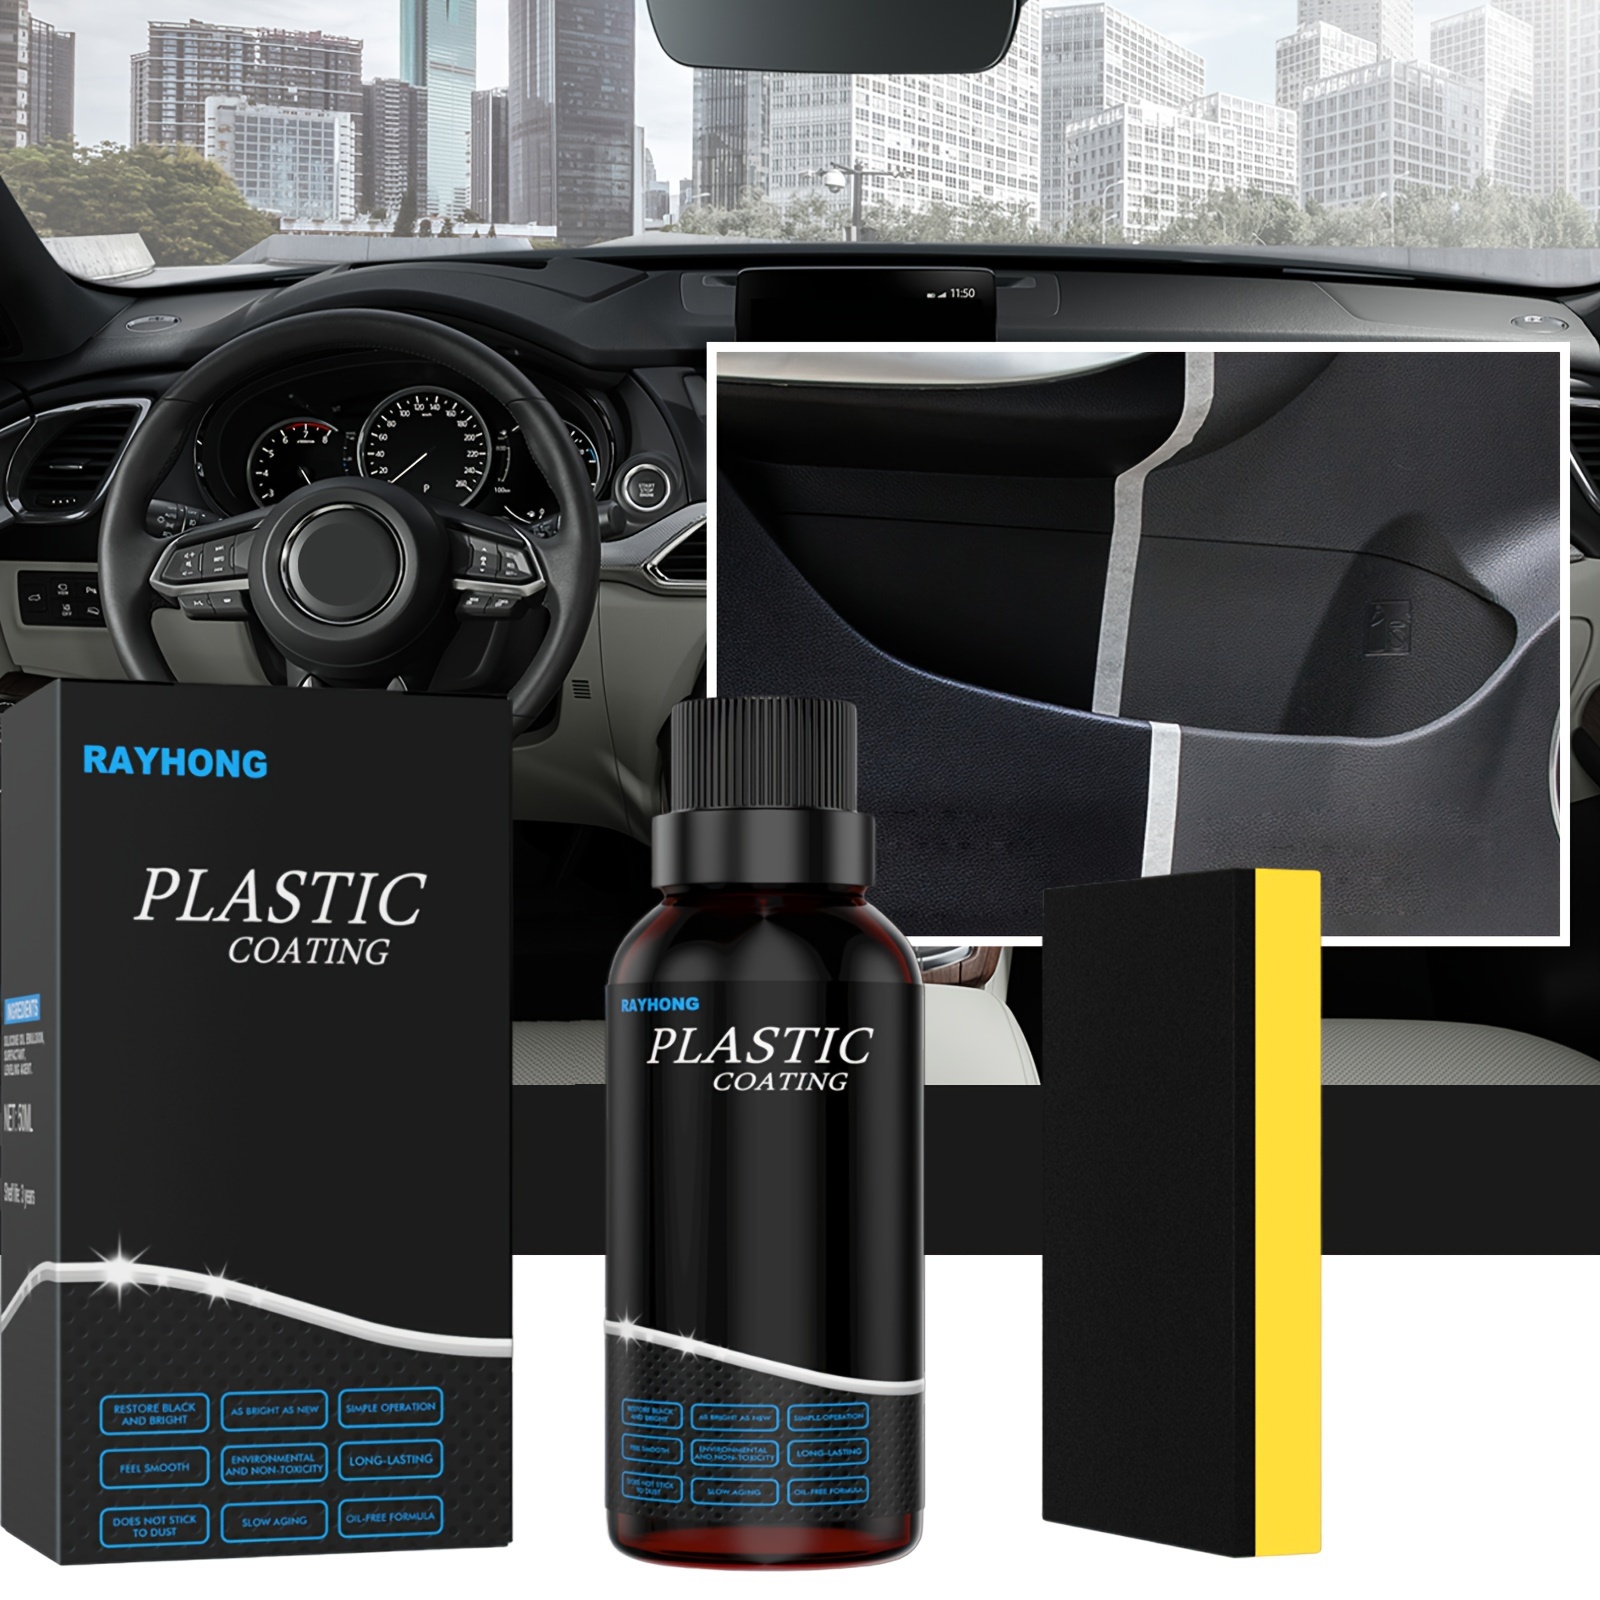 Restore Your Car's Interior With Our Plastic Retread Repair - Temu